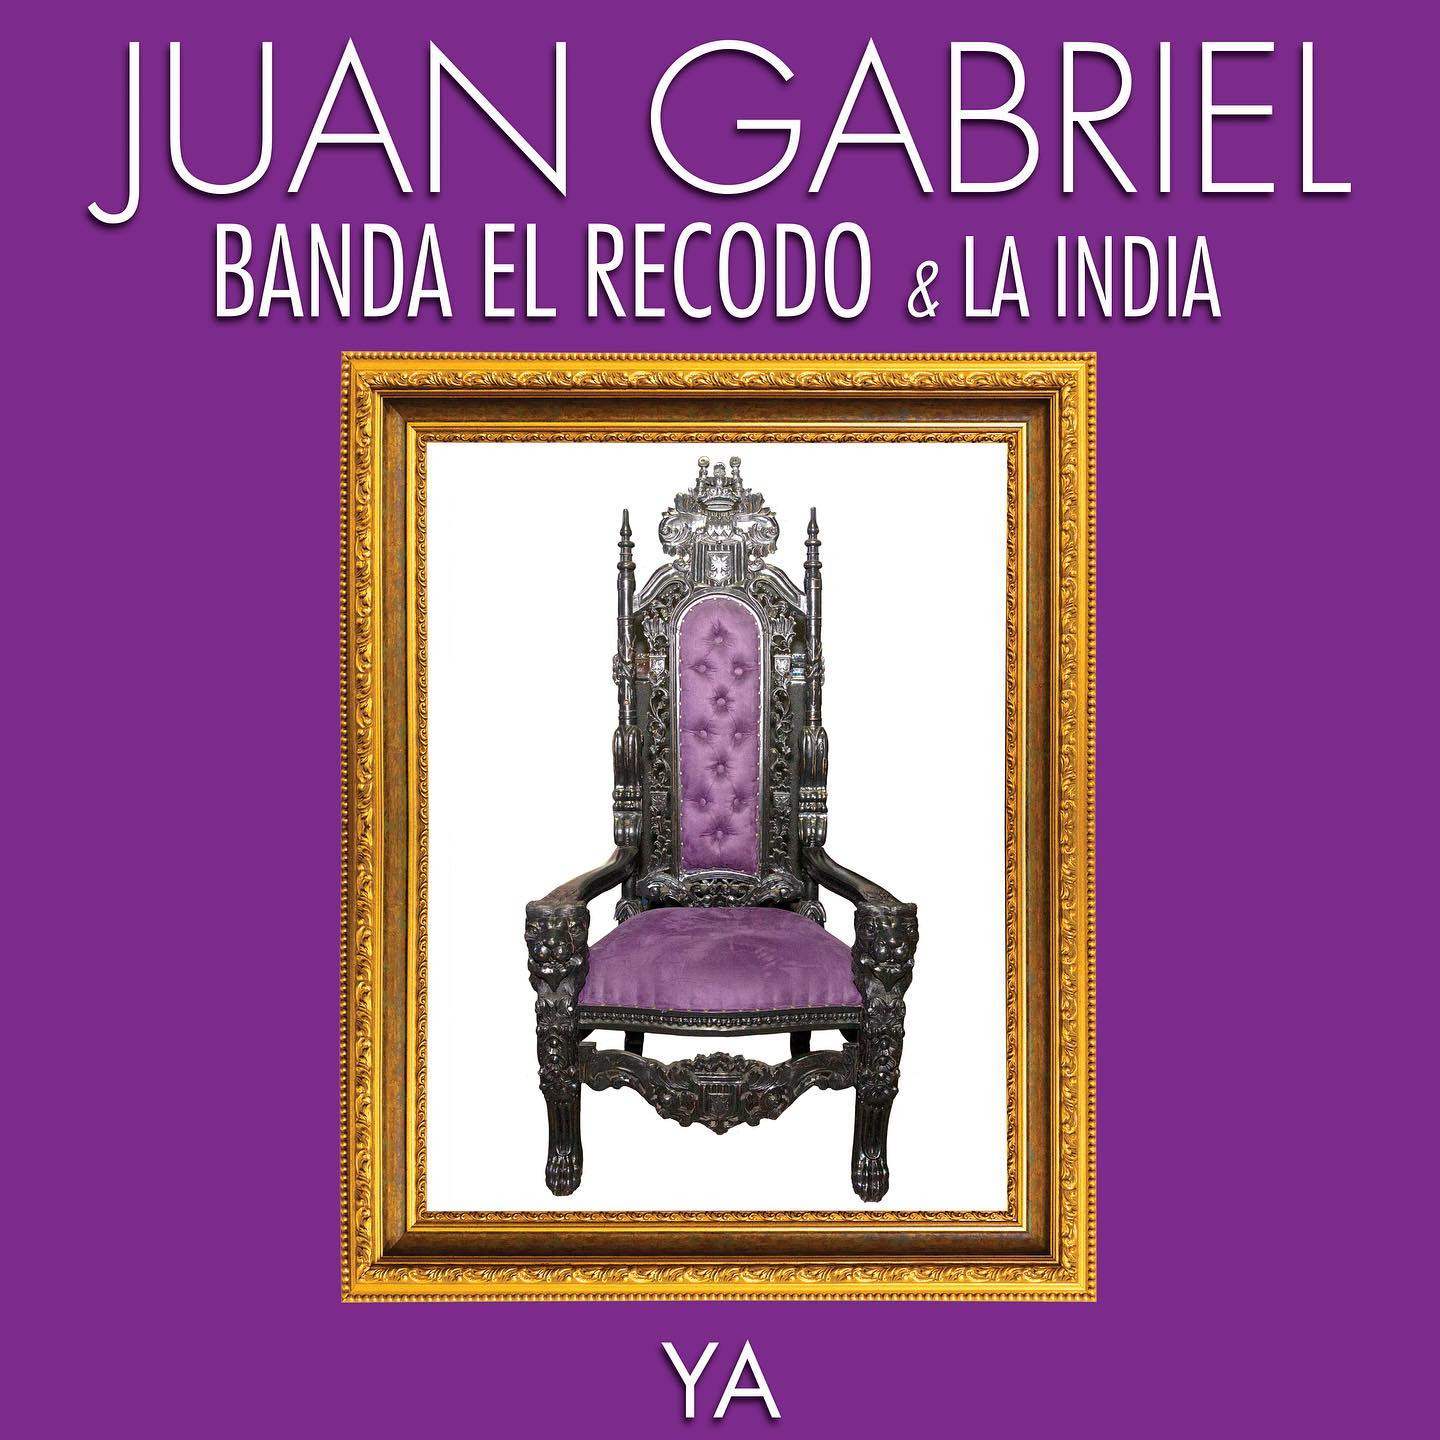 Se confirma primer lanzamiento póstumo de Juan Gabriel titulado ‘Ya’